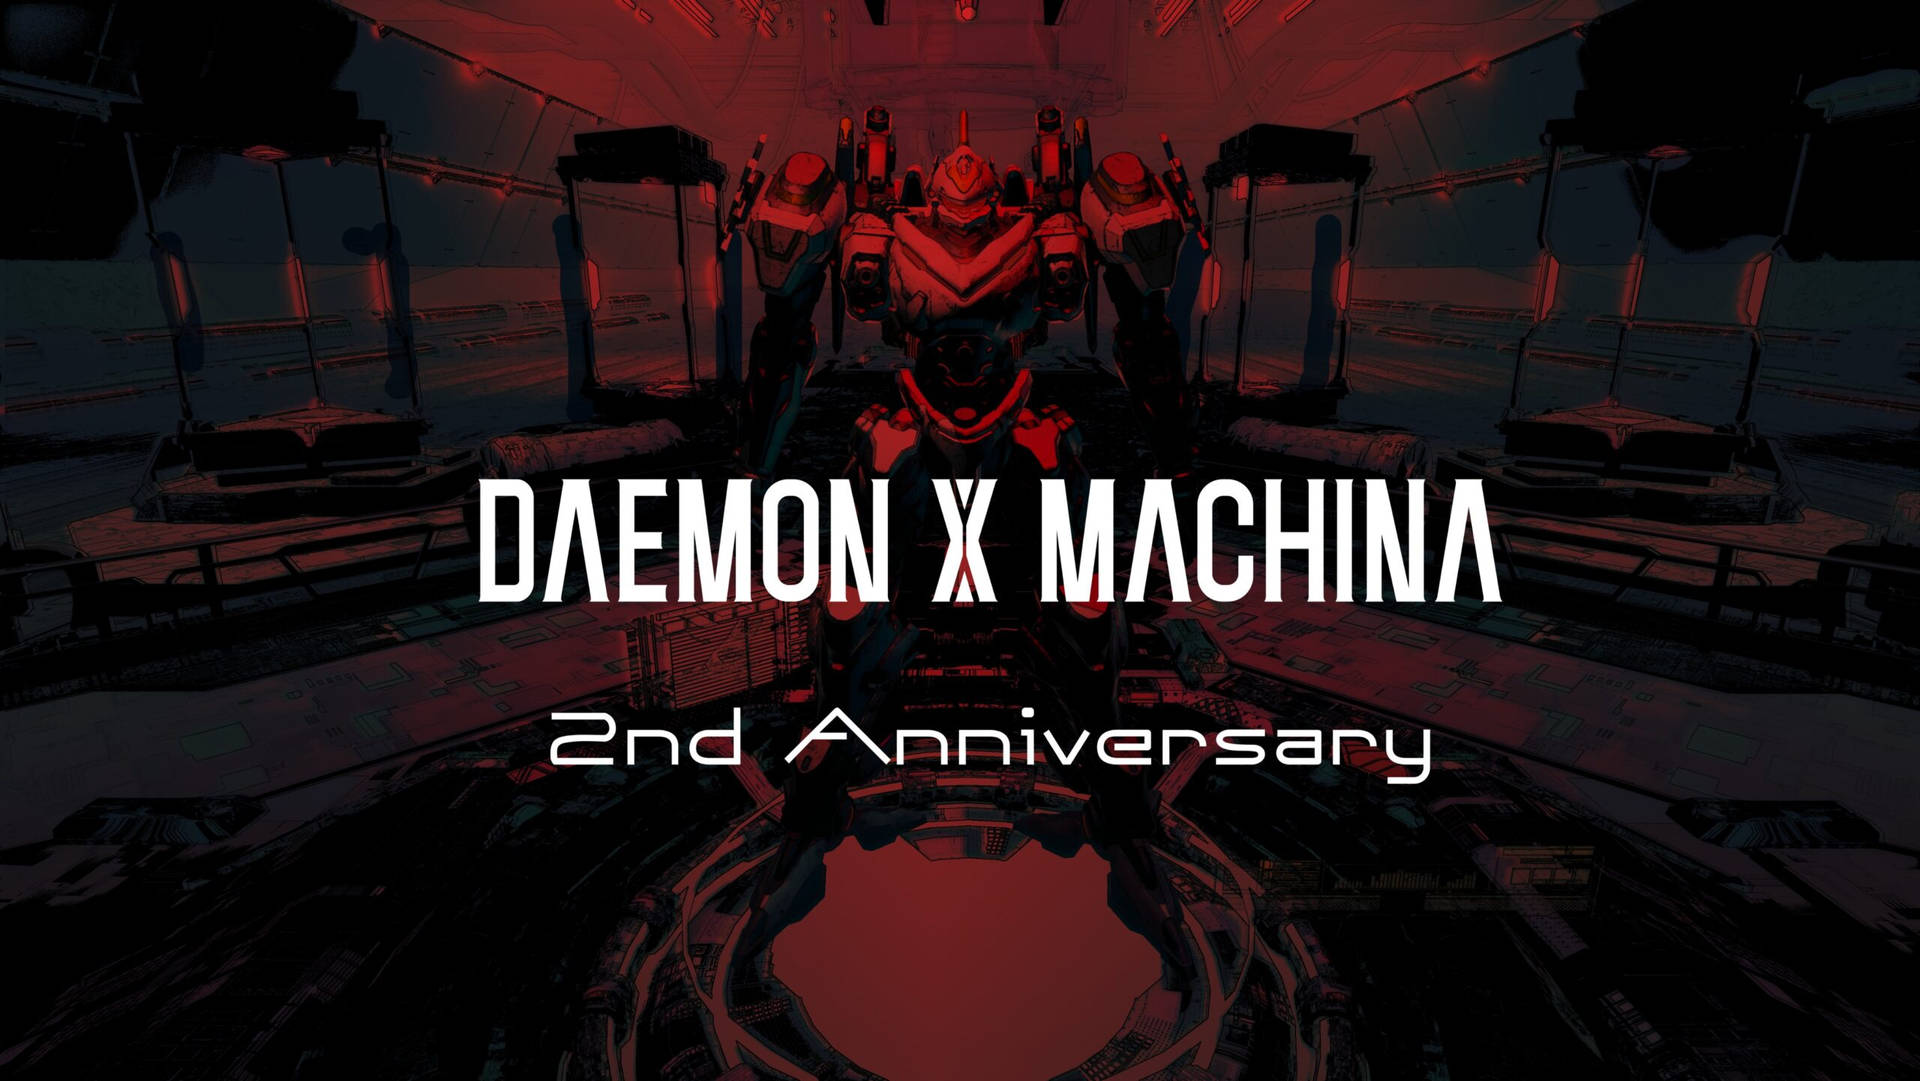 Aniversáriode 2 Anos Do Daemon X Machina. Papel de Parede